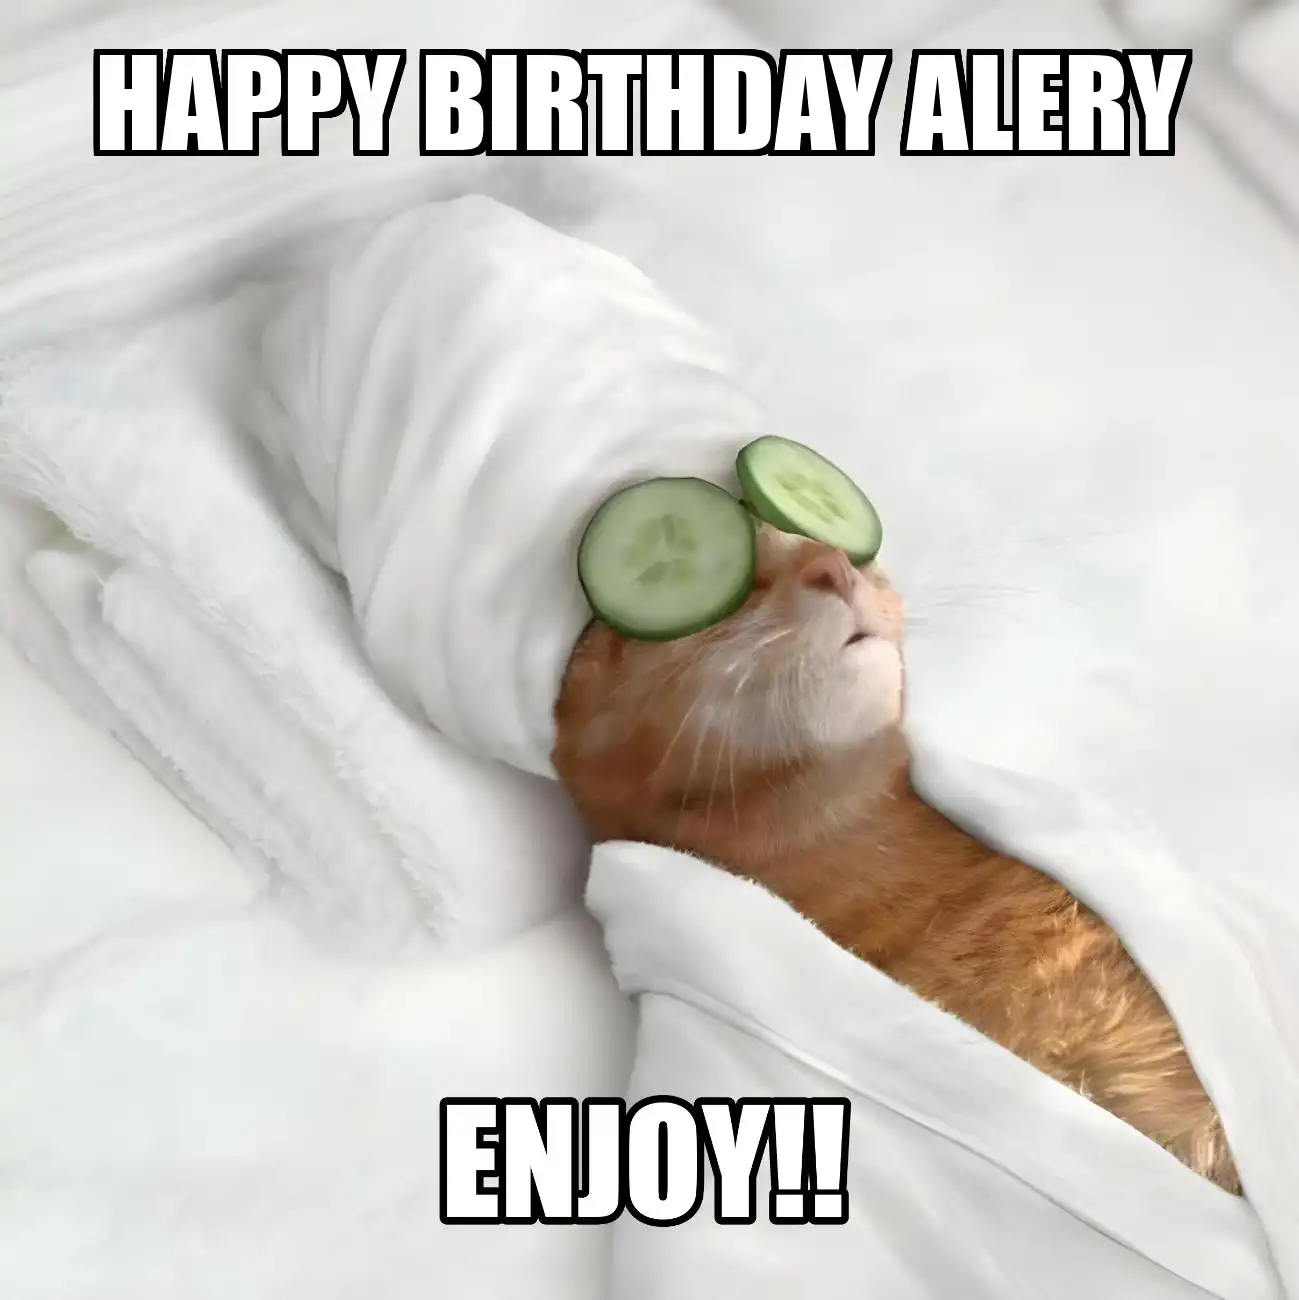 Happy Birthday Alery Enjoy Cat Meme